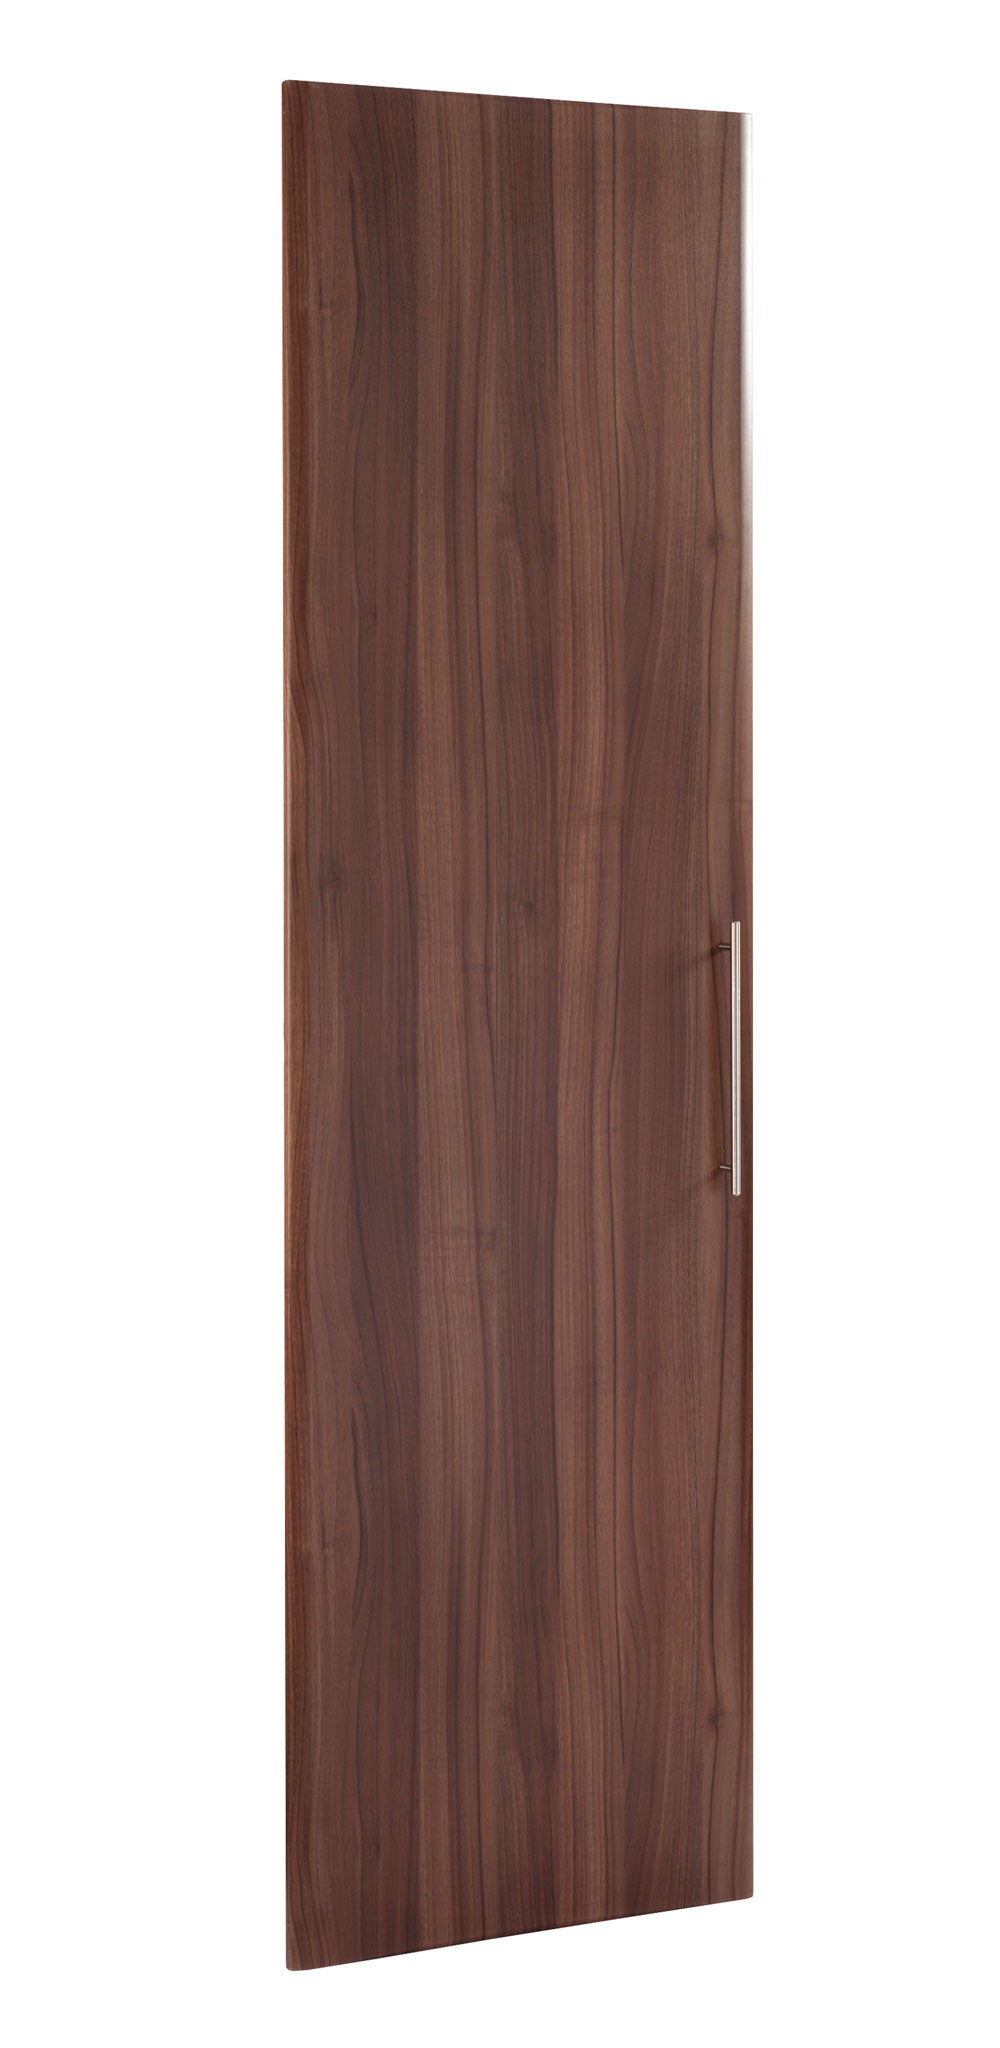 Made to measure Crossland door in wood finish